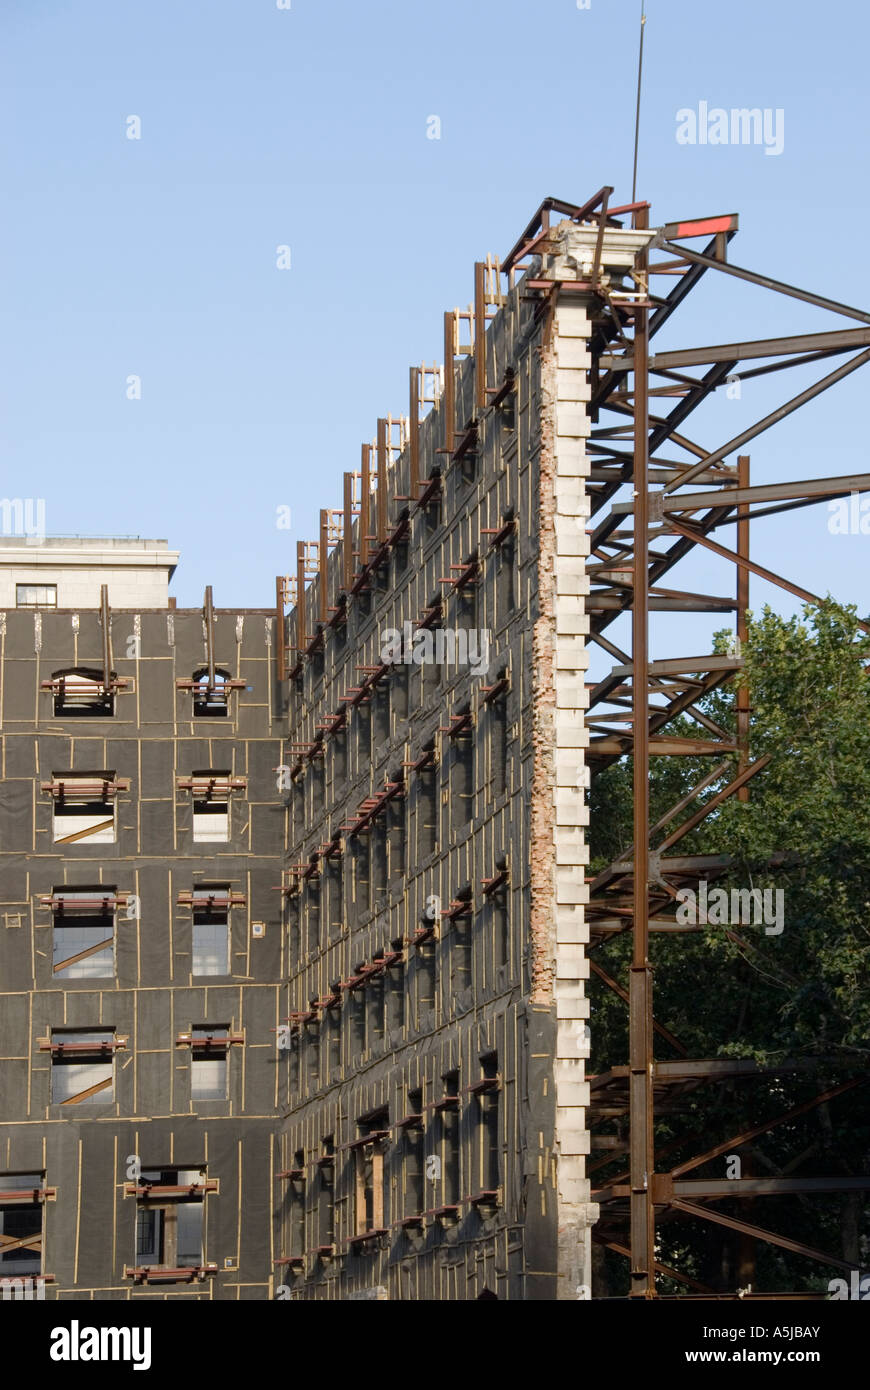 Provisorisches Stahlgerüst zur Unterstützung der erhaltenen Mauerwerksfassade des alten Marconi House Abbruchs und Einbau in die neue Struktur Aldwych London England UK Stockfoto